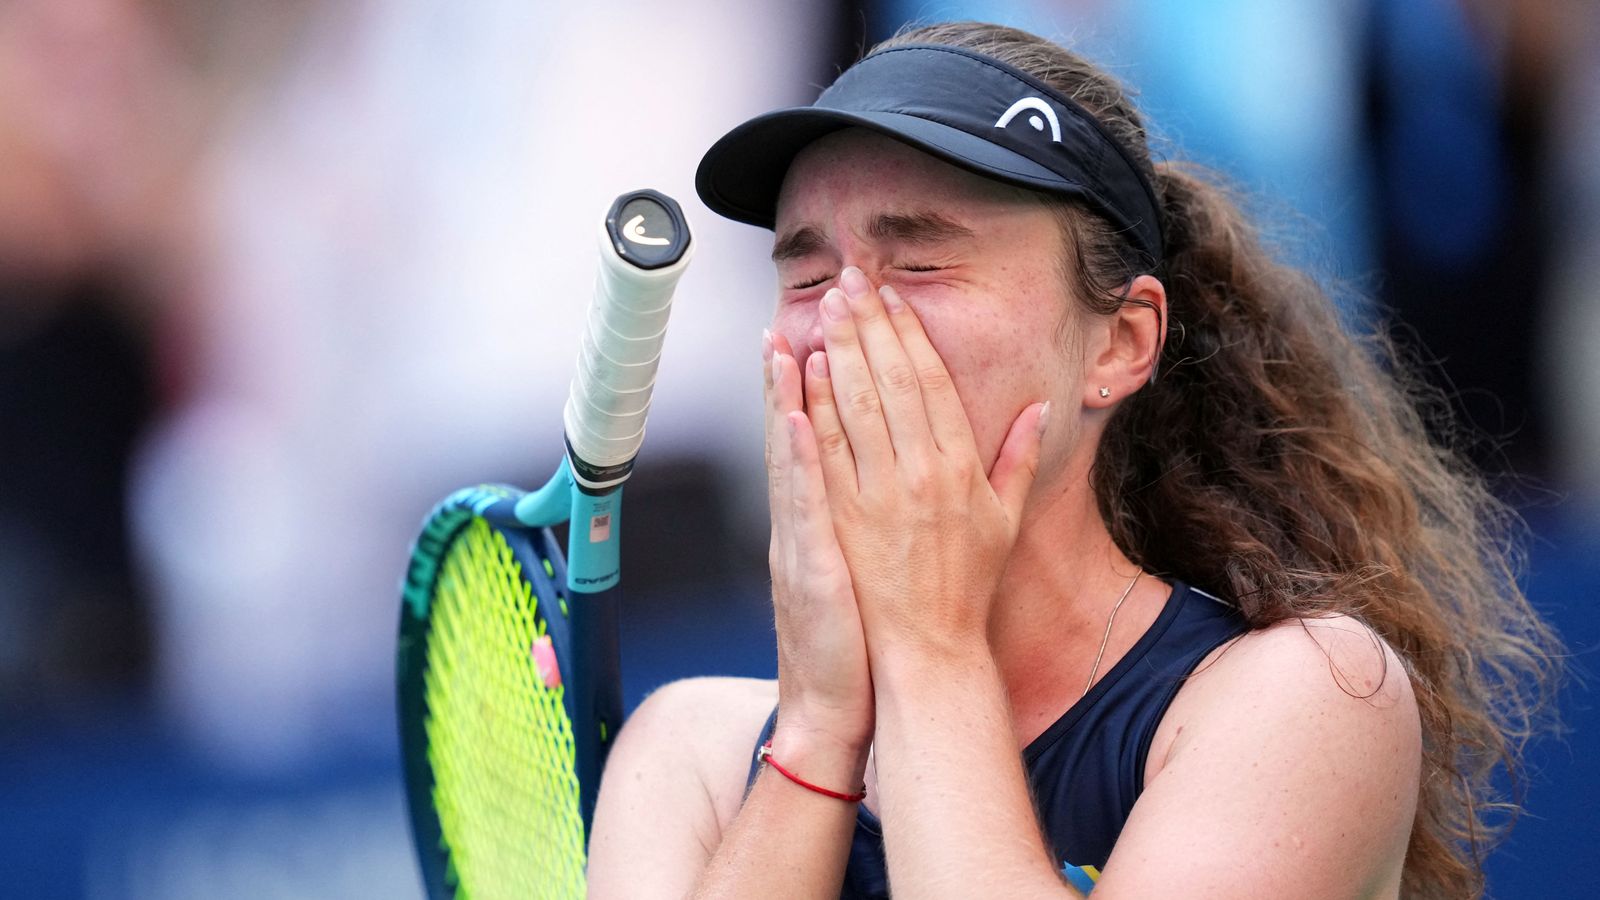 La joueuse ukrainienne Daria Snigur fond en larmes après avoir battu Simona Halep à l’US Open |  Nouvelles du monde